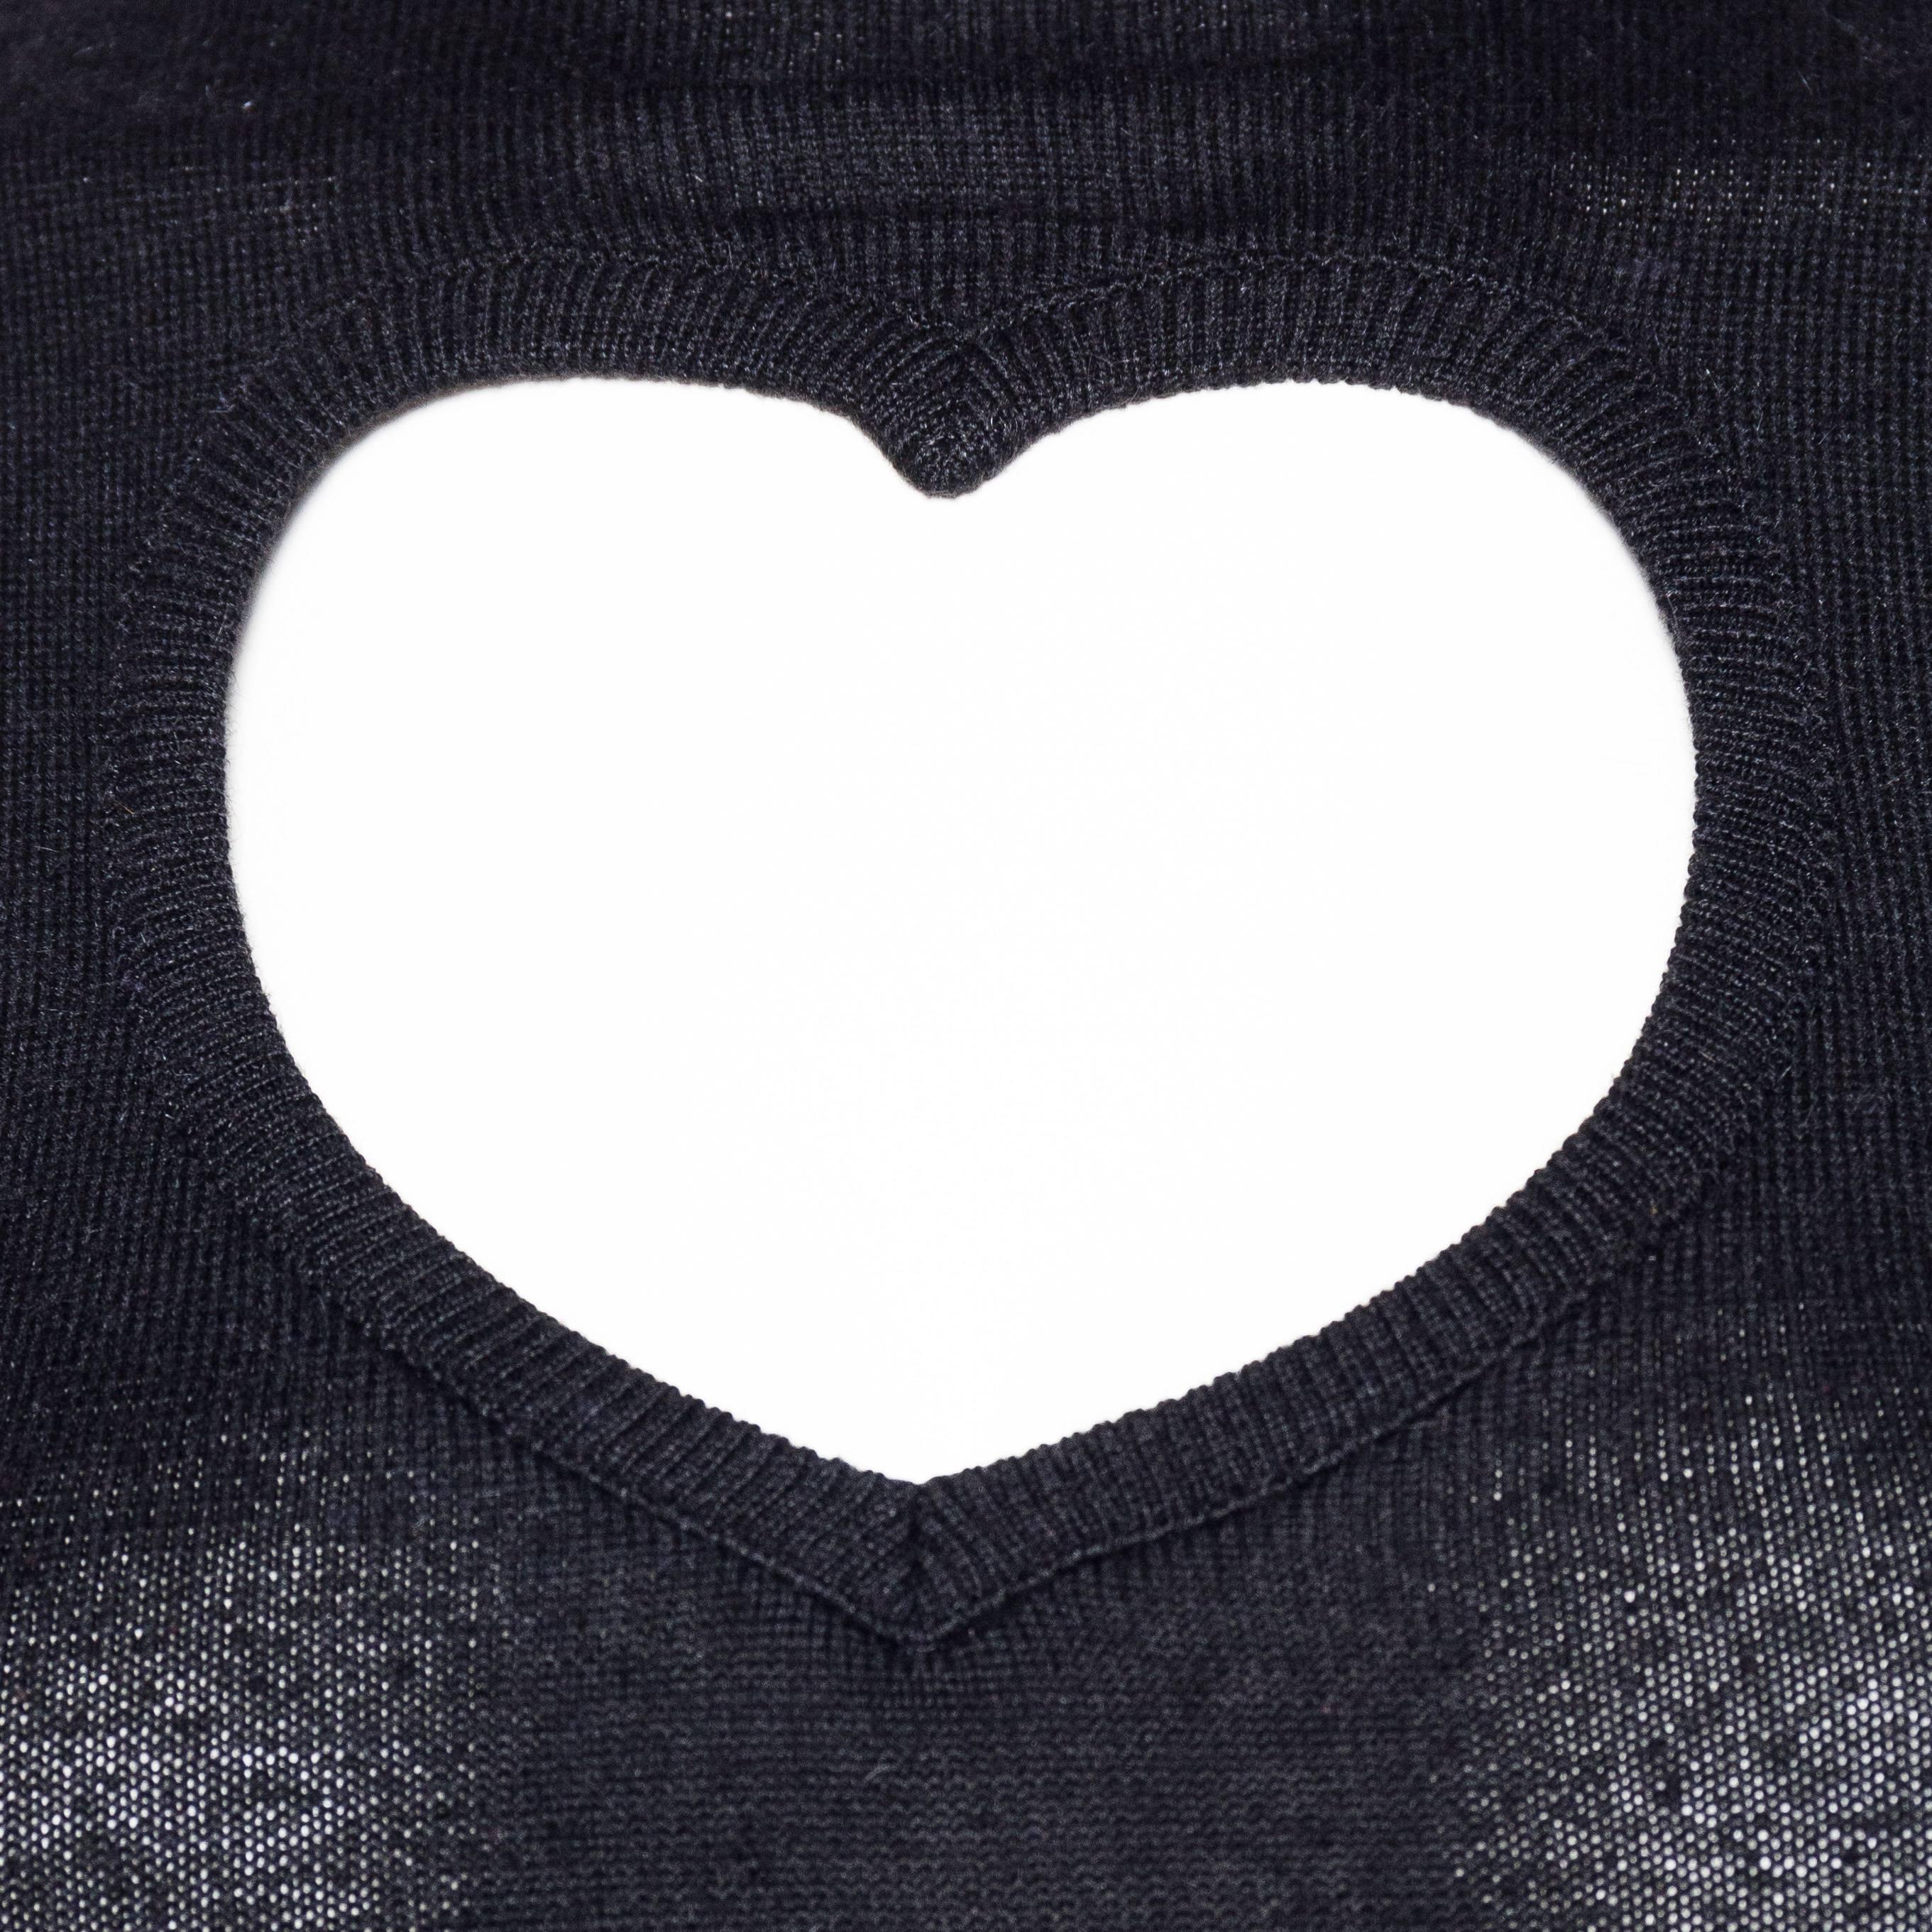 Women's 1990S DOROTHEE BIS Wool Blend Knit Heart Cutout Top